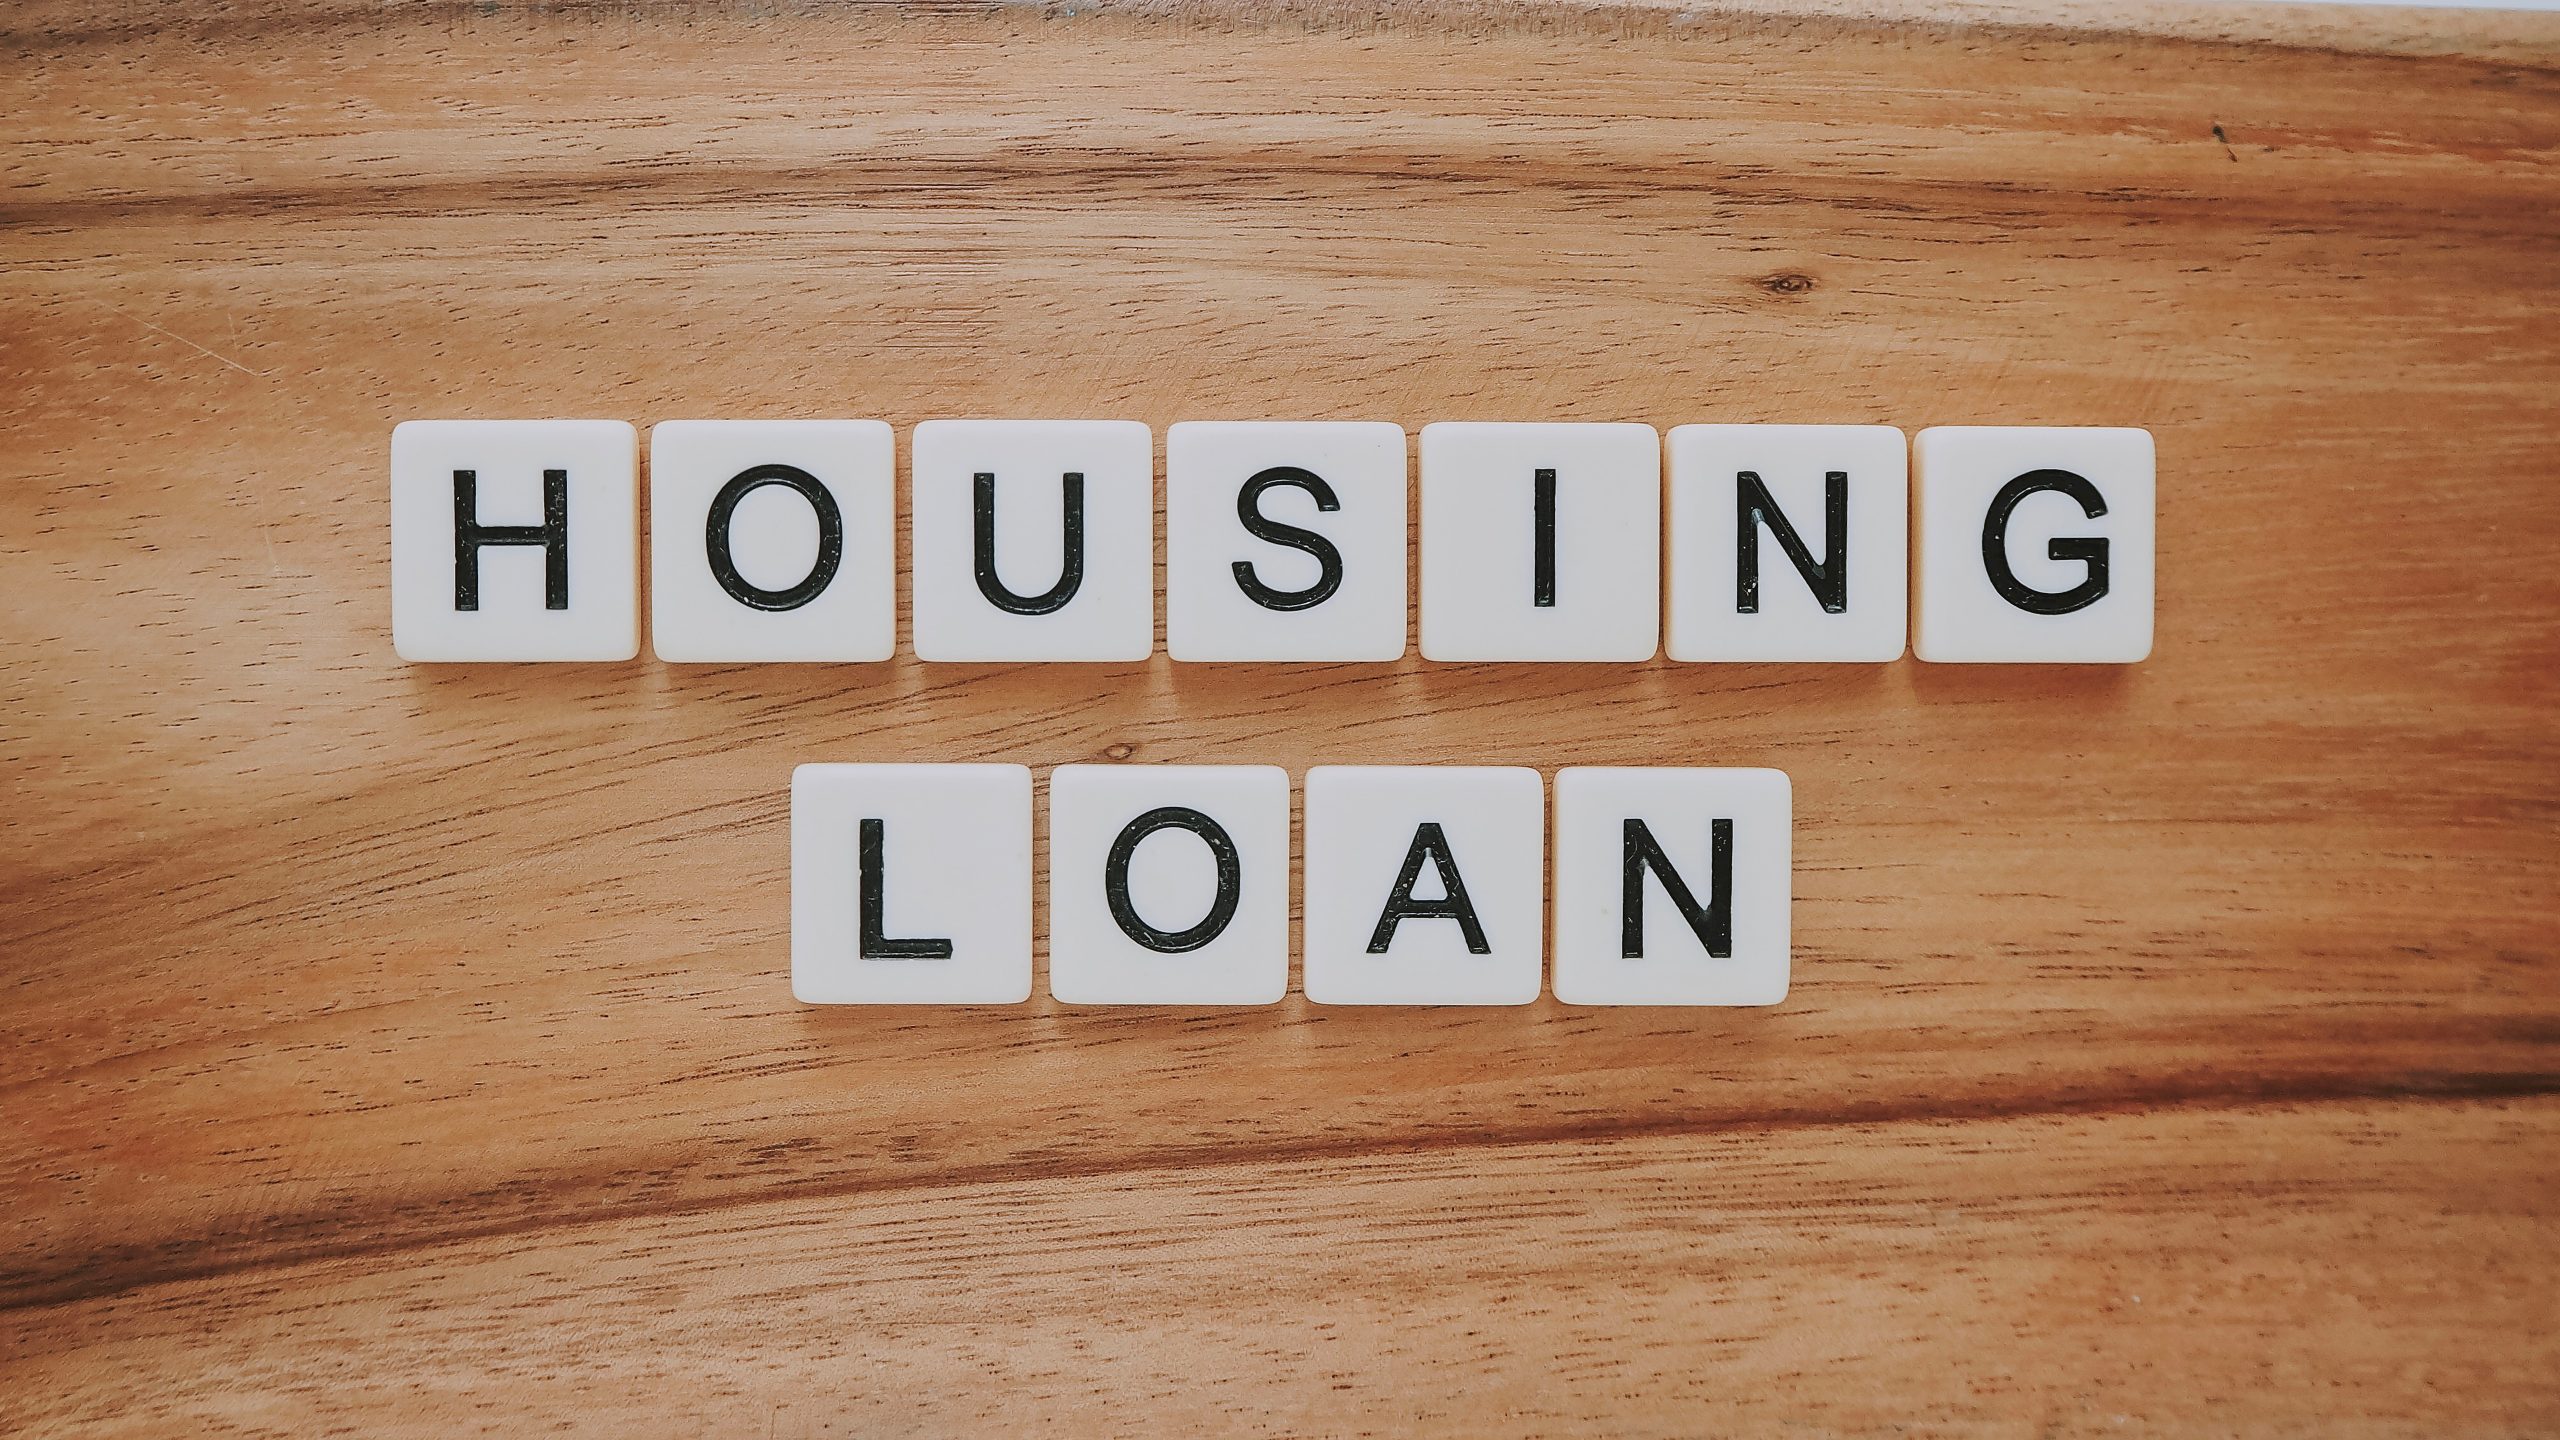 découvrez tout sur les prêts hypothécaires et obtenez les meilleures offres de prêts immobiliers avec notre guide complet sur les prêts hypothécaires.